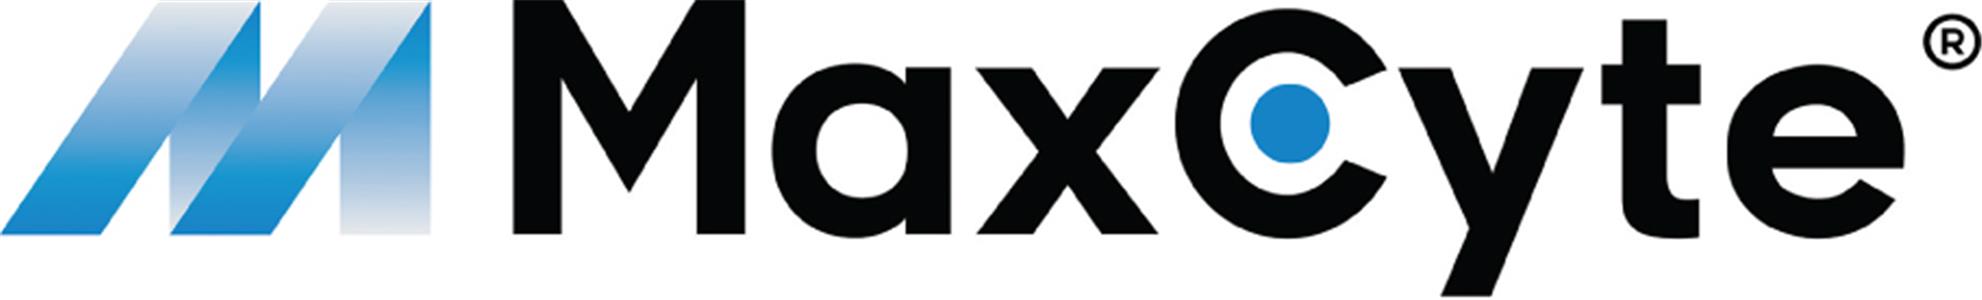 MXCT logo